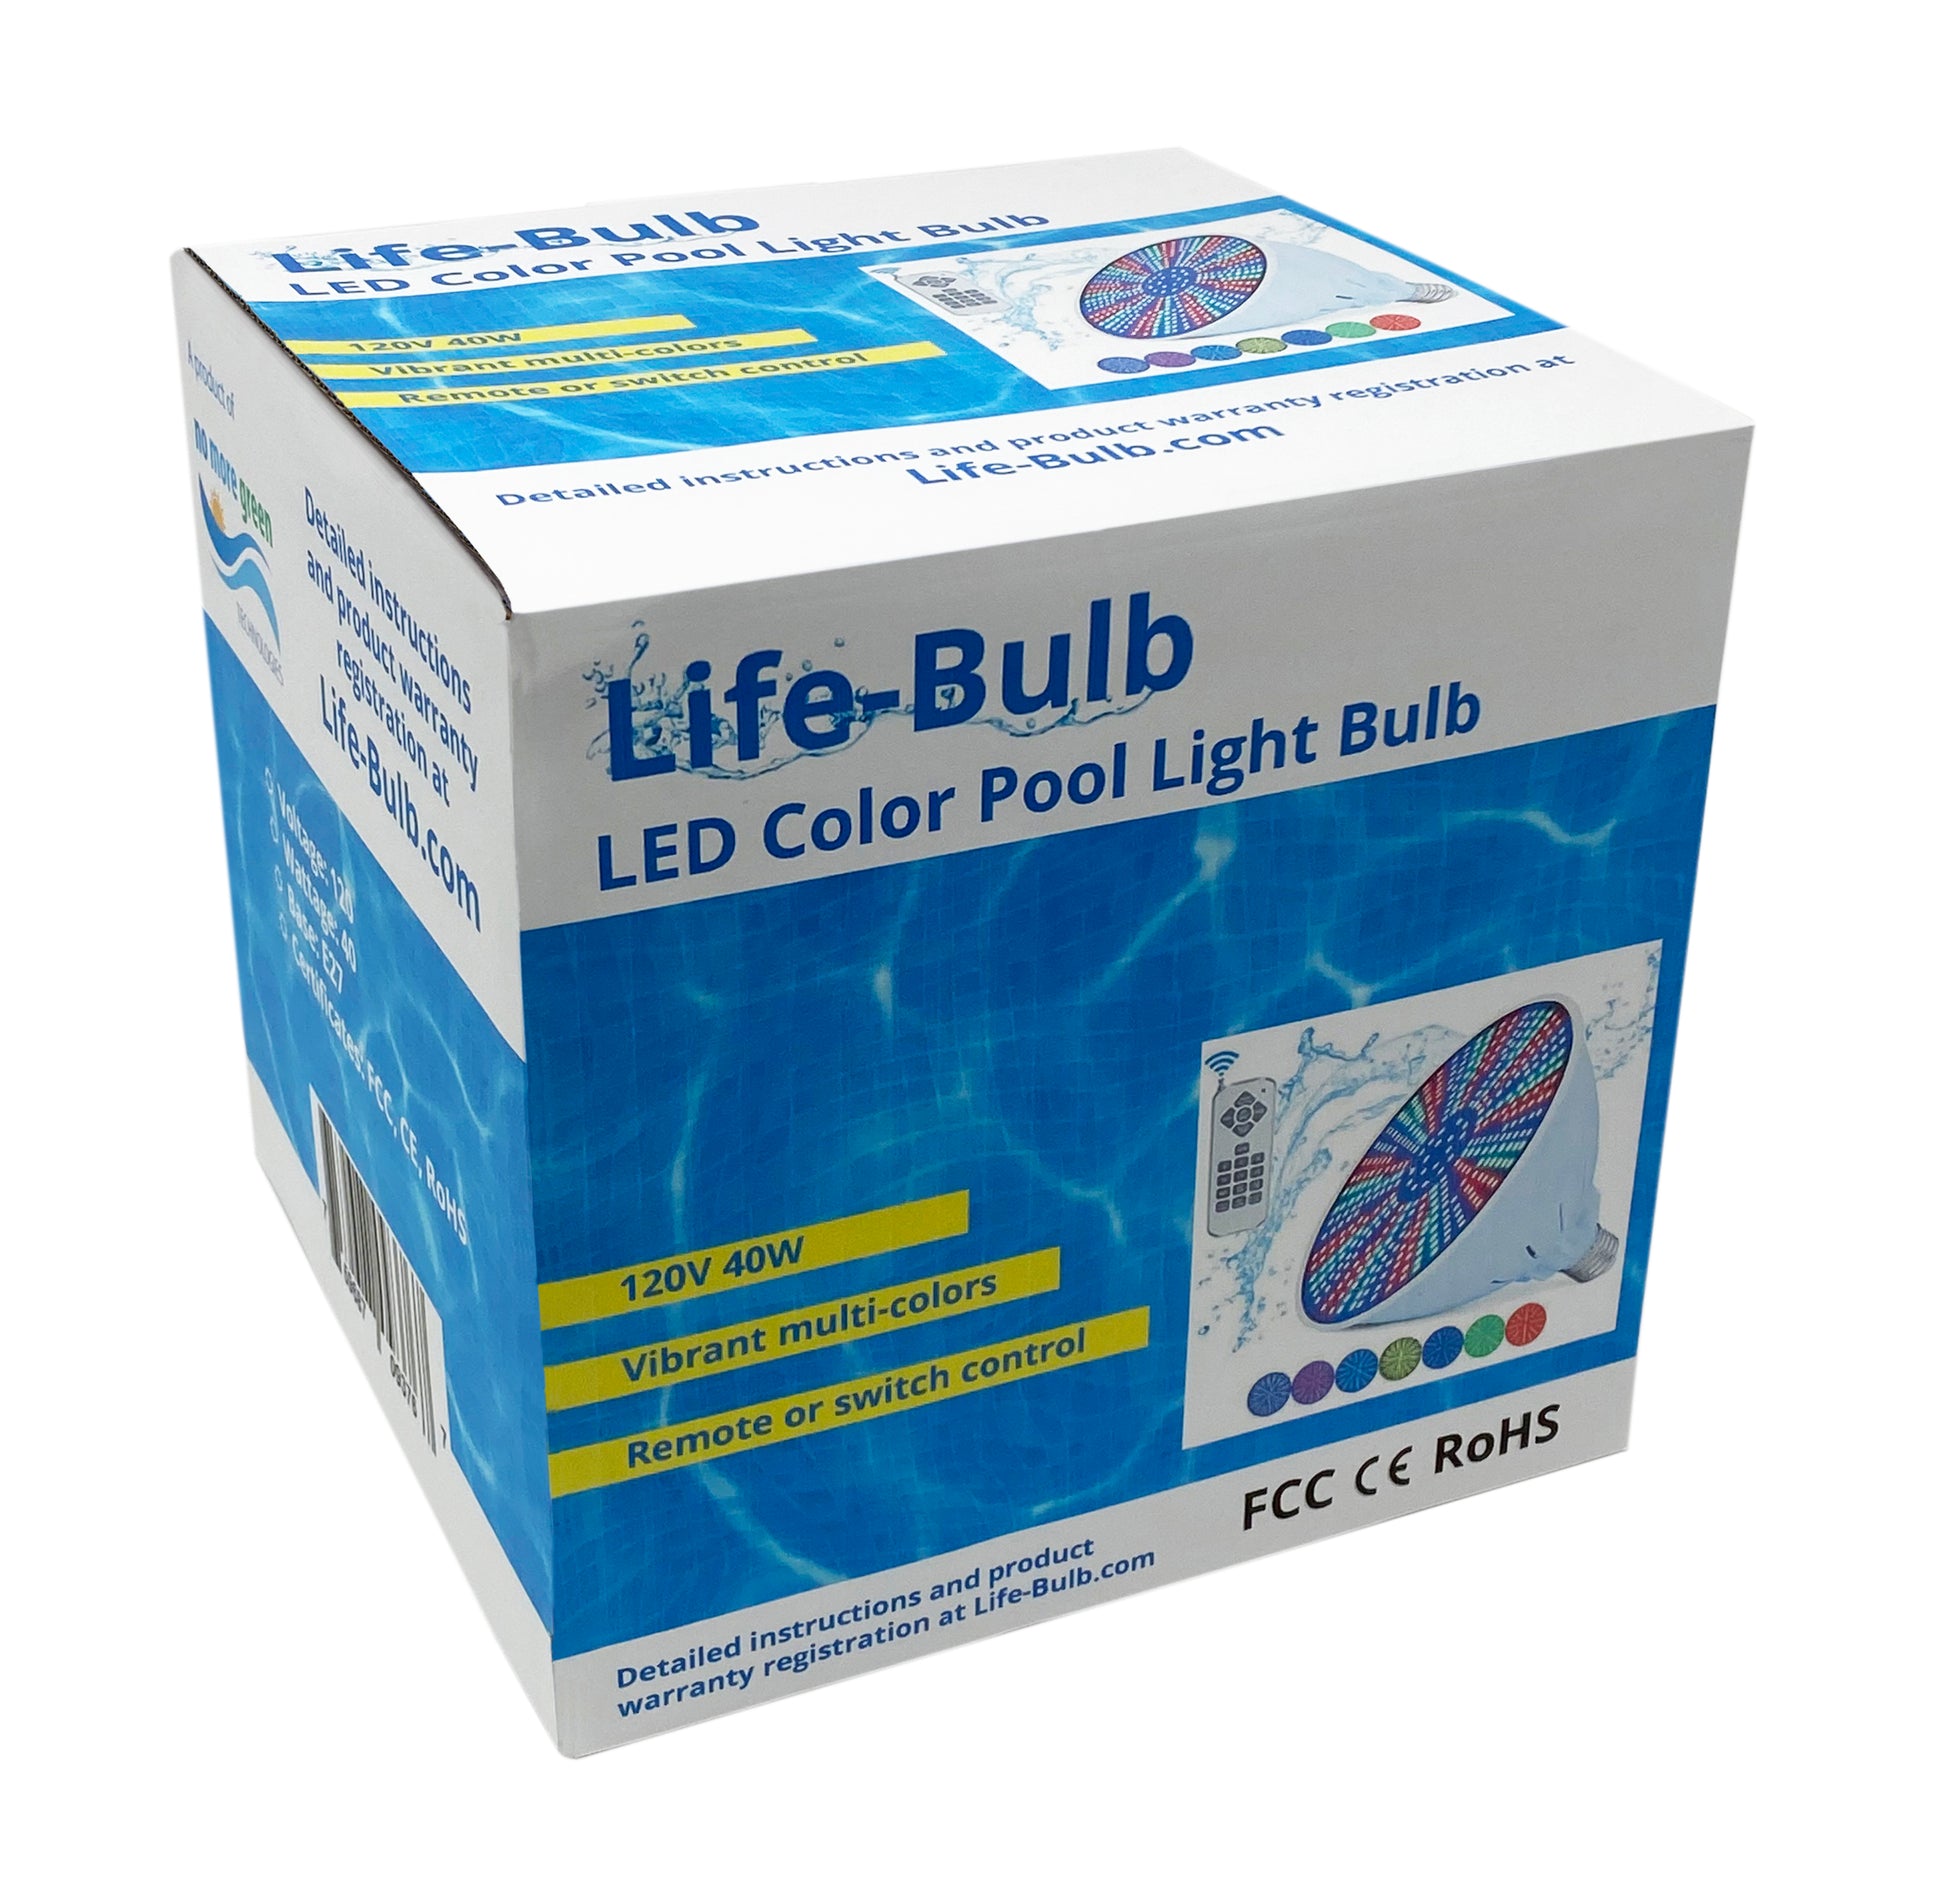 Led Pool Light Bulb